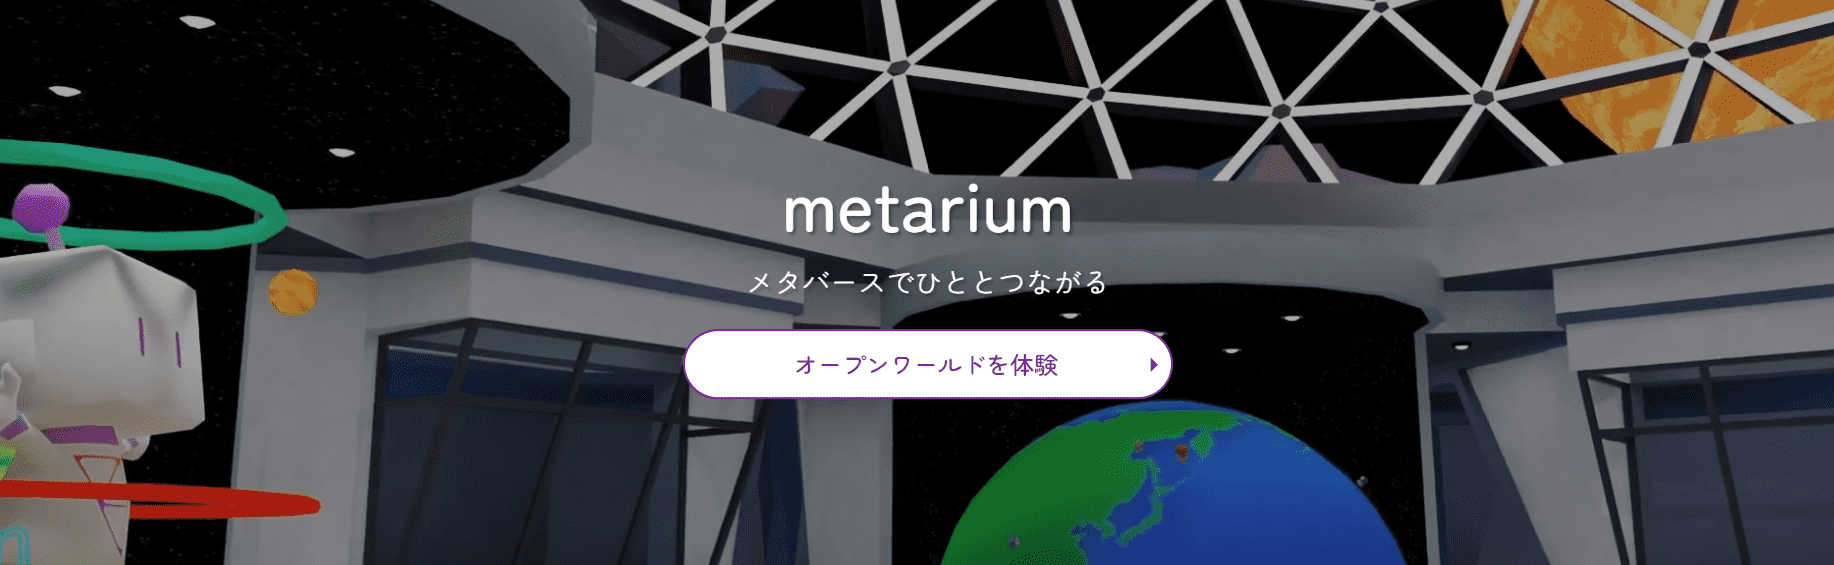 metarium